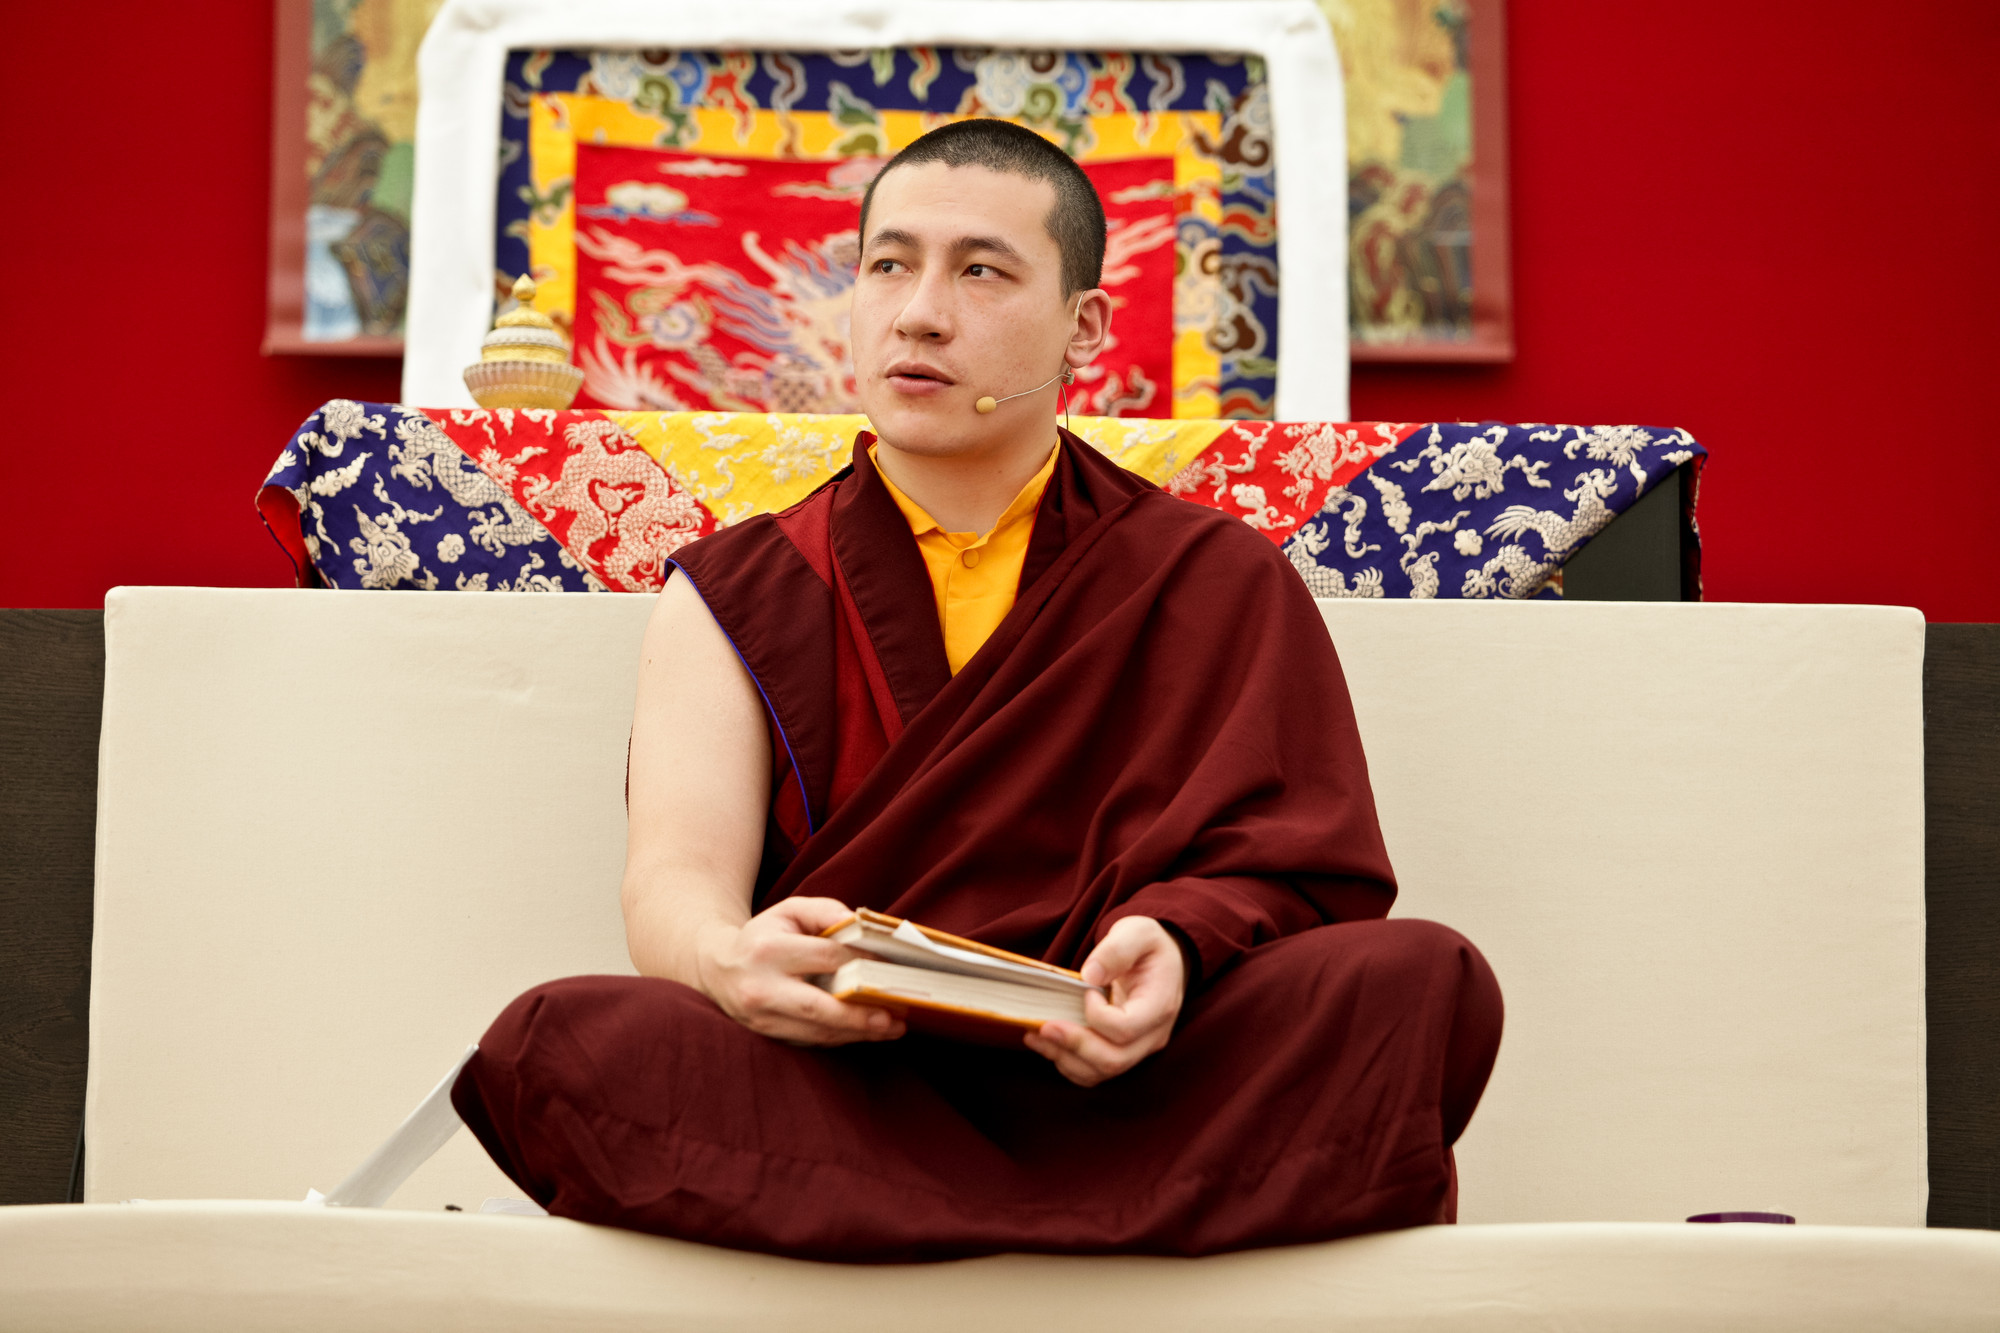 Evropu v létě navštíví 17. Karmapa